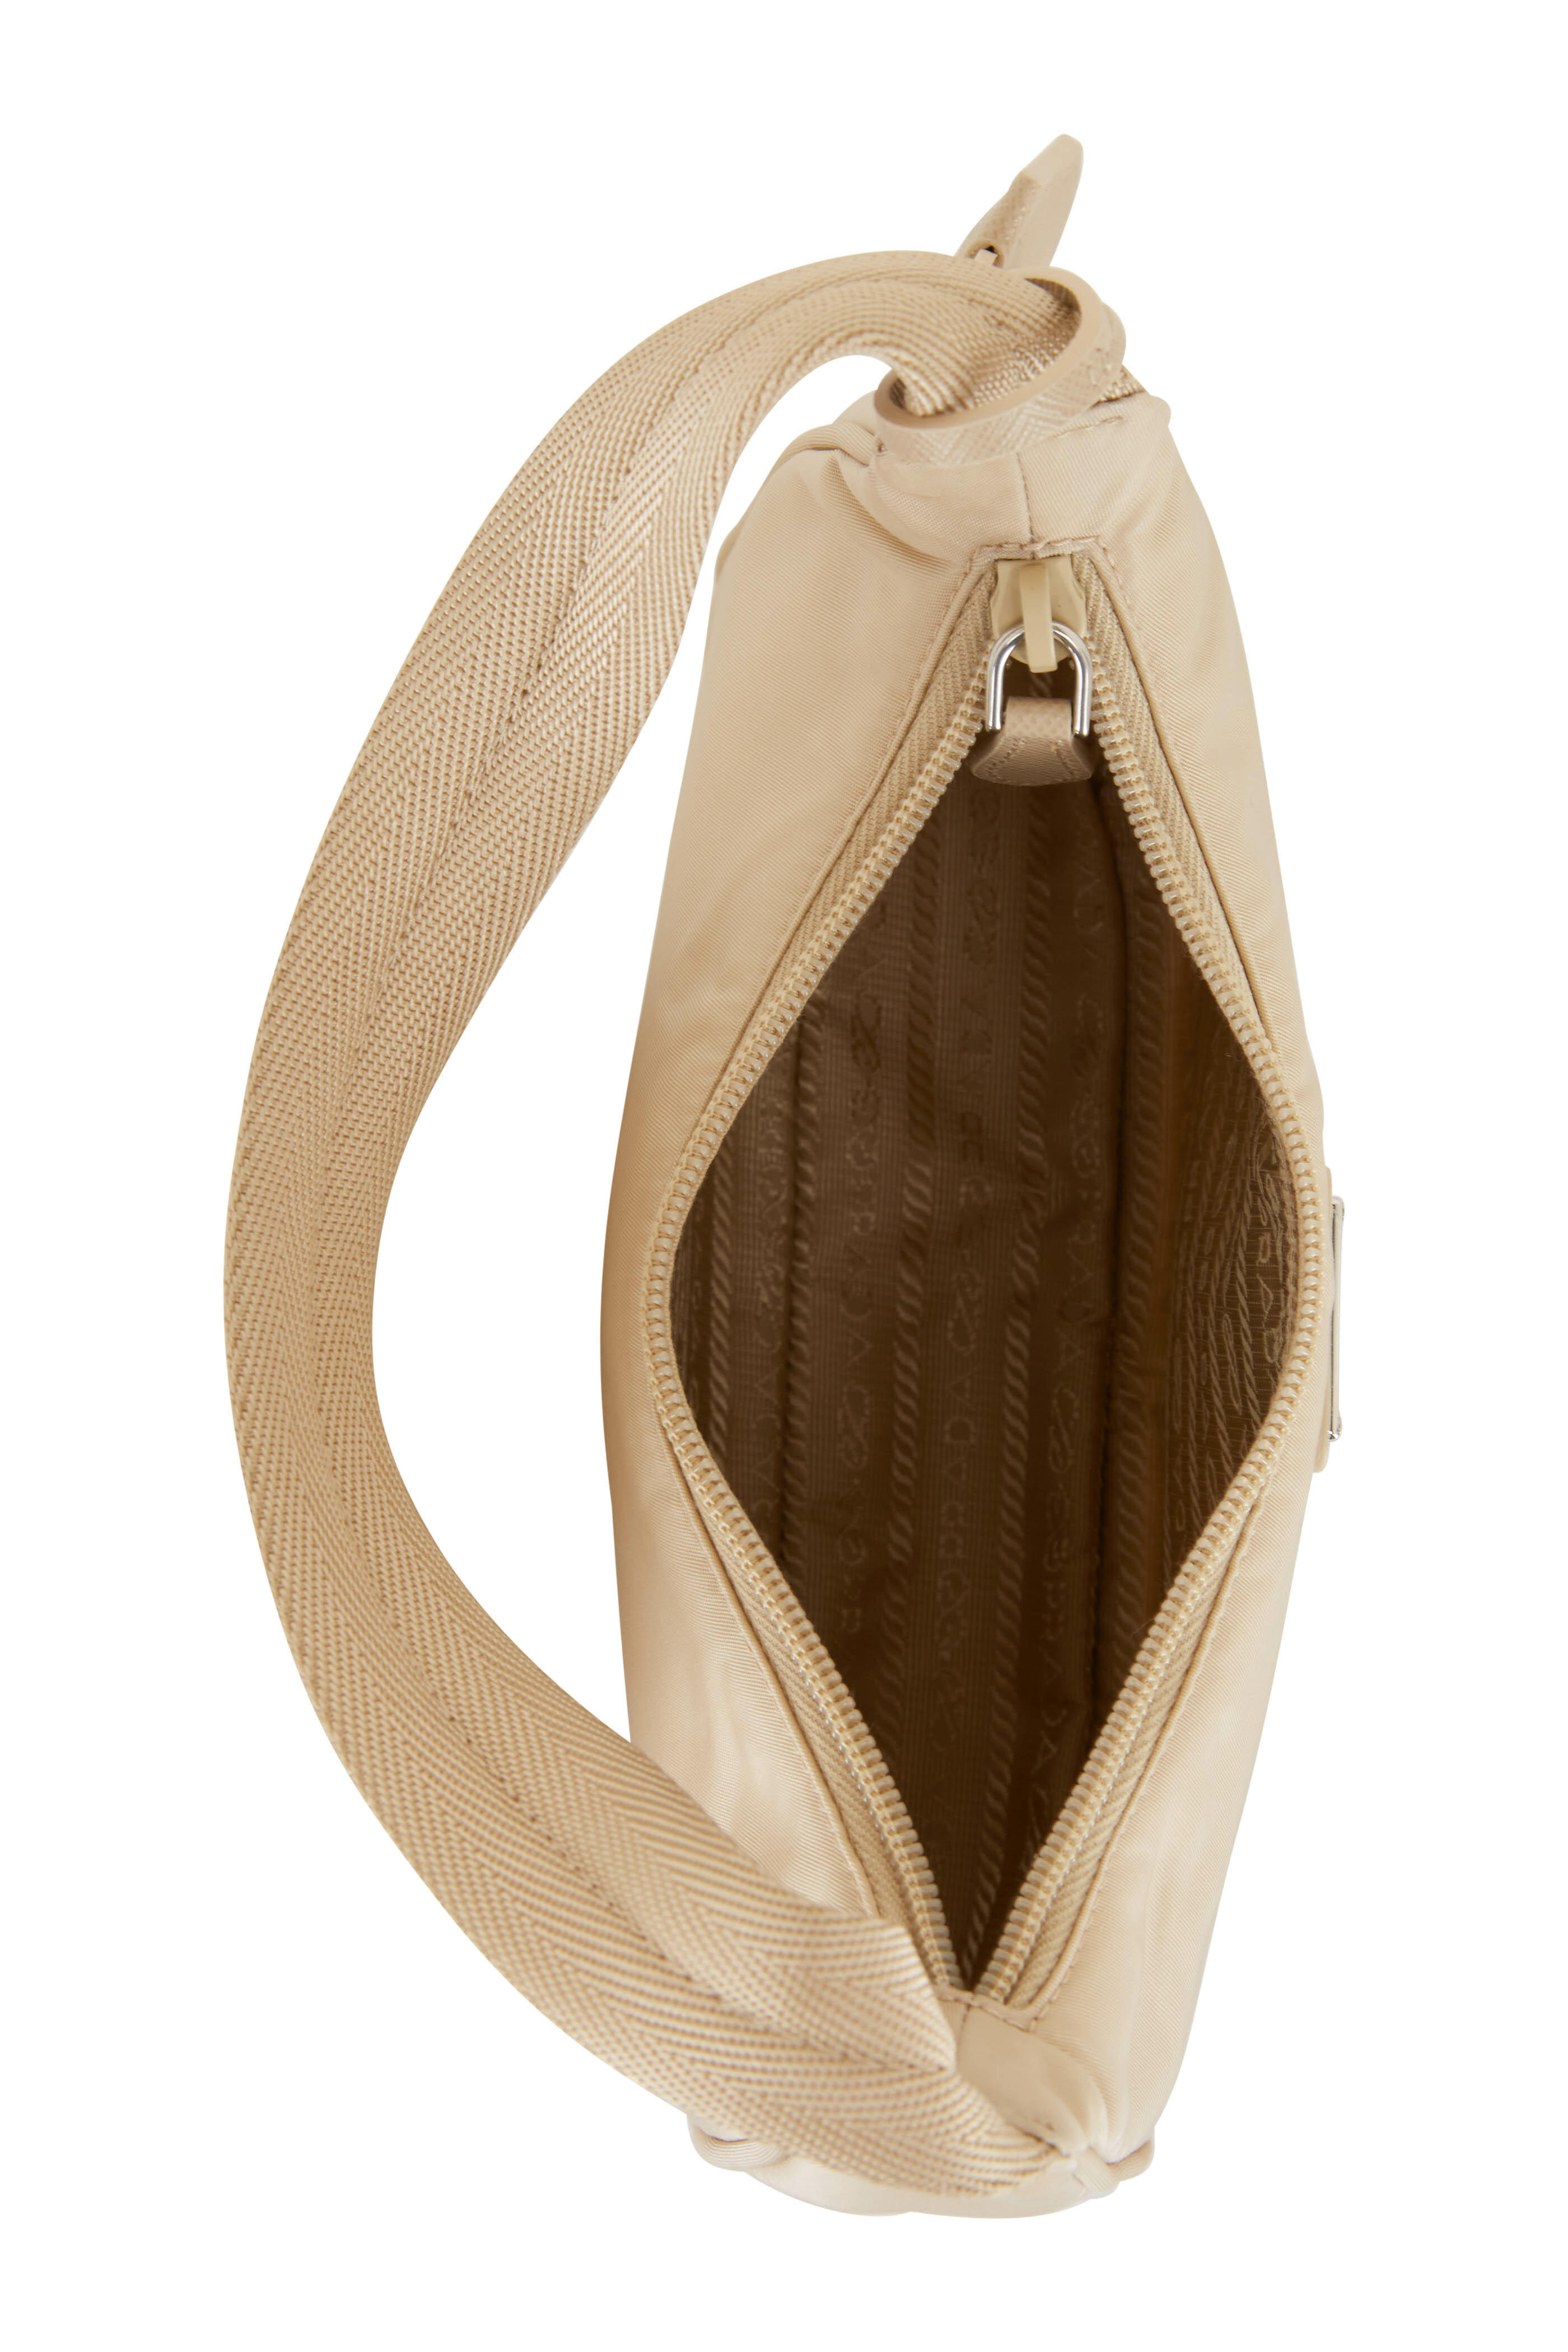 Prada Leather Card Holder With Shoulder Strap - Sand Beige